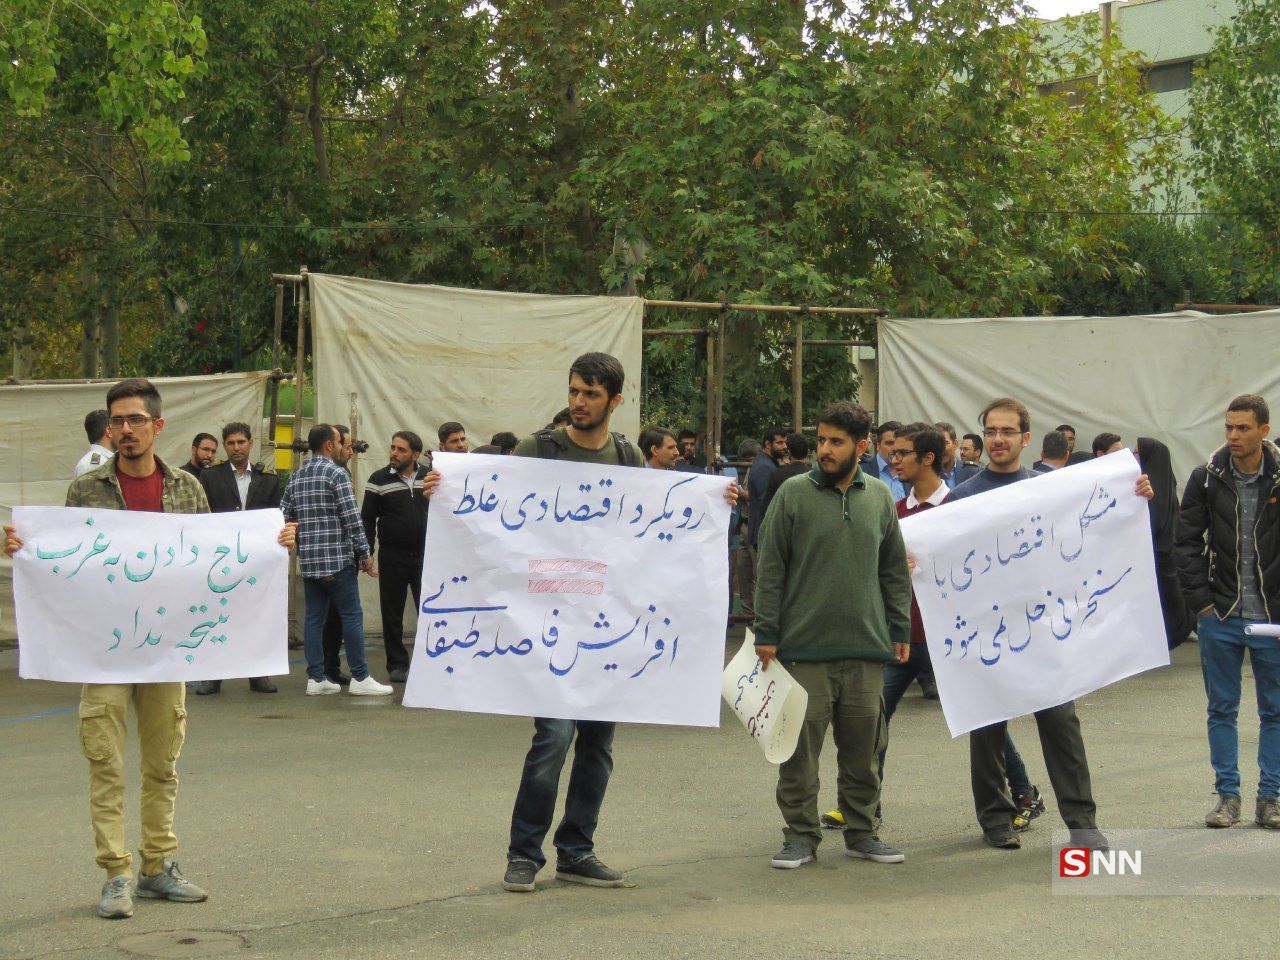 دانشجویان در اعتراض به عملکرد اقتصادی دولت شعارهای اعتراضی سر دادند+ فیلم و عکس